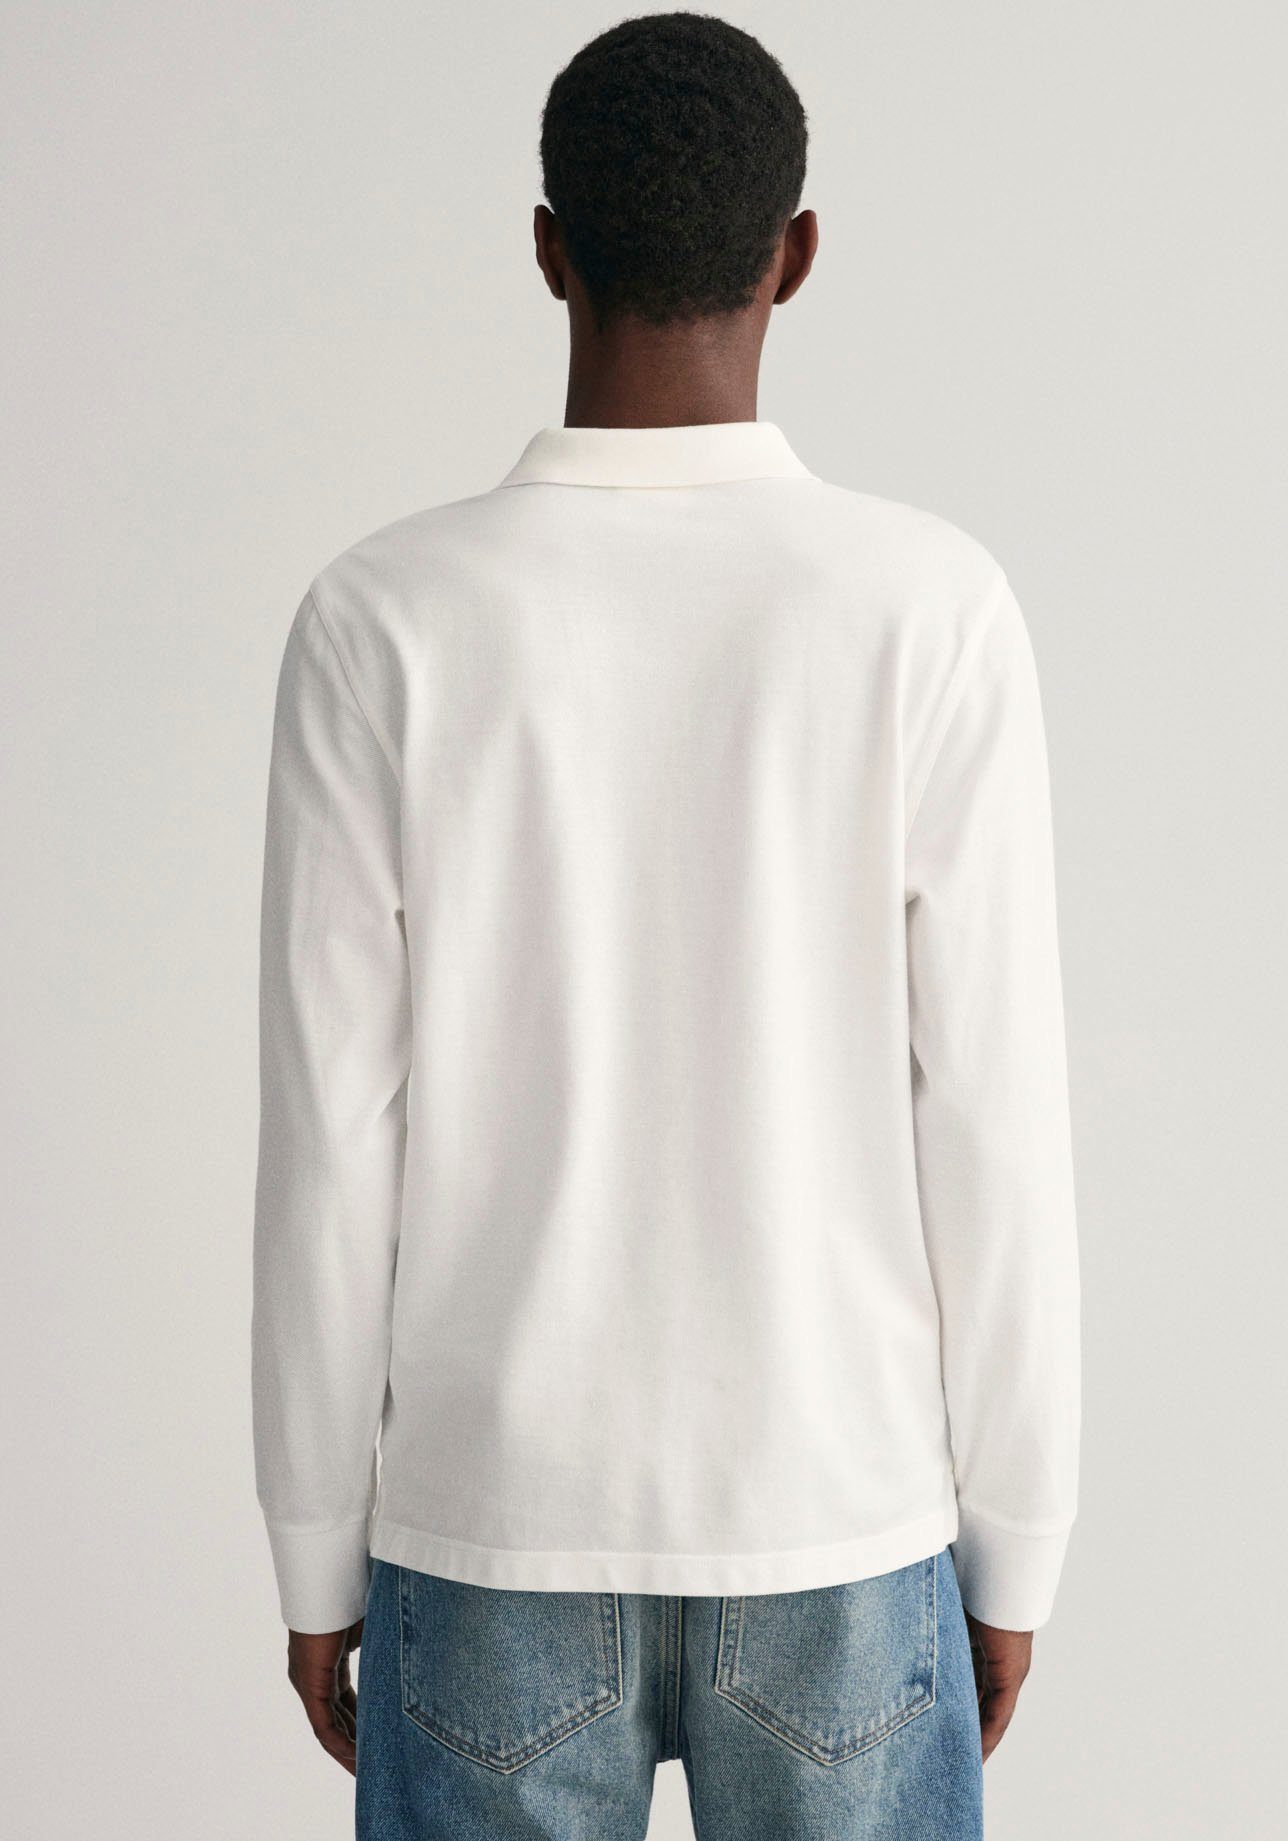 Logotickerei white Poloshirt mit LS der Brust PIQUE SHIELD auf REG Gant RUGGER